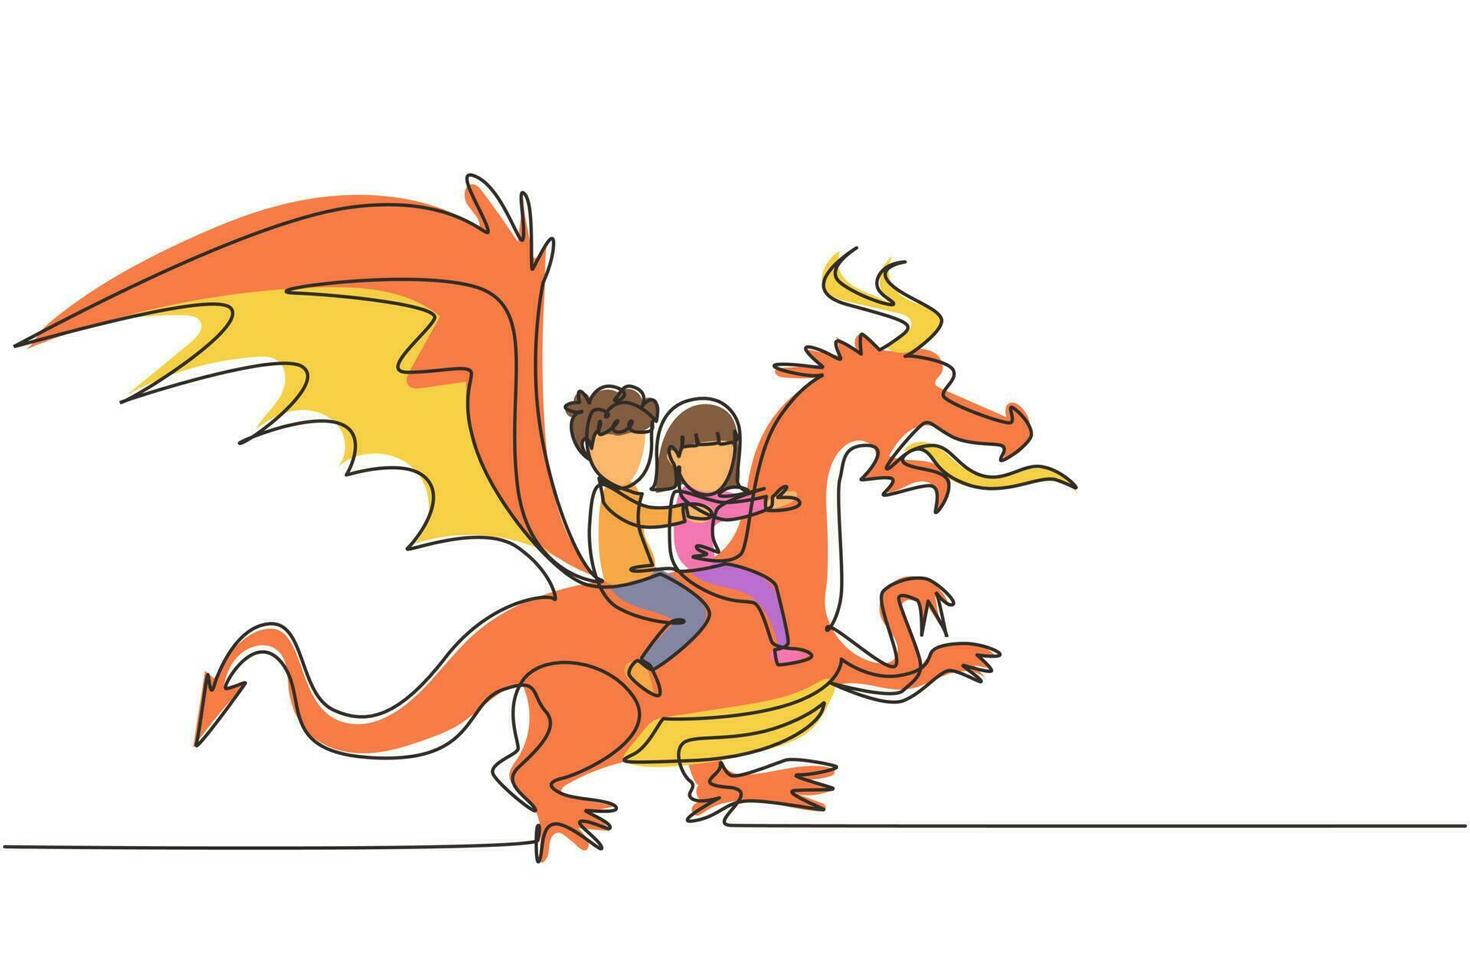 un unico disegno a tratteggio felice ragazzino e ragazza che volano insieme con il drago fantasy. i bambini volano e si siedono sul dorso del drago al cielo. fiaba immaginaria per bambini. vettore di disegno a linea continua